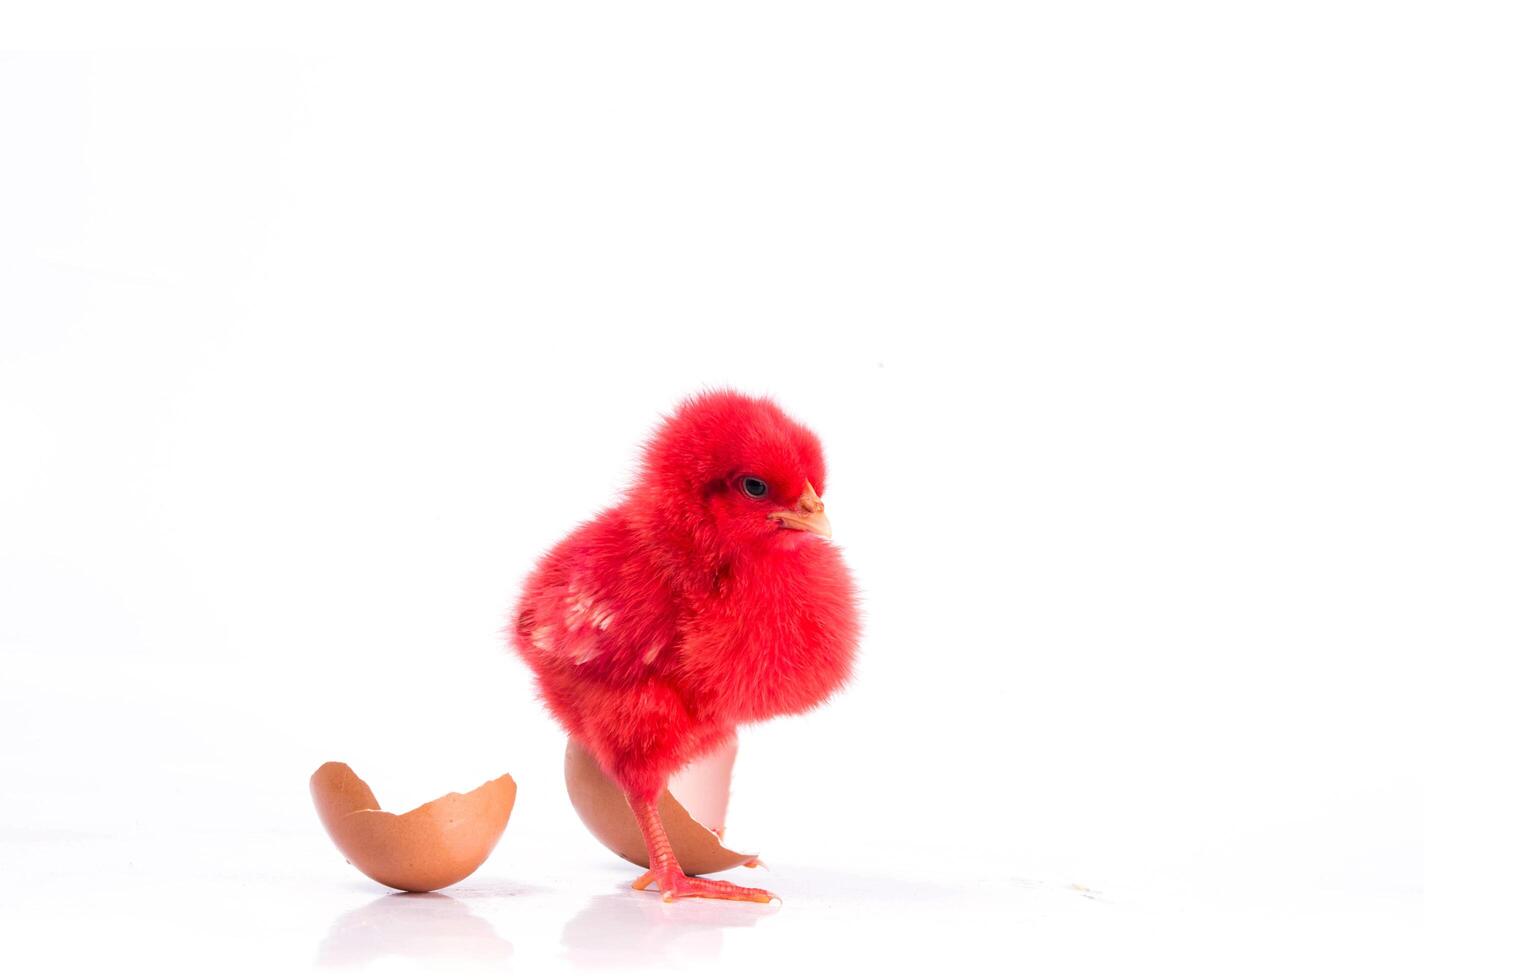 süßes rotes kleines huhn mit gebrochenem ei, hühnerkonzept foto